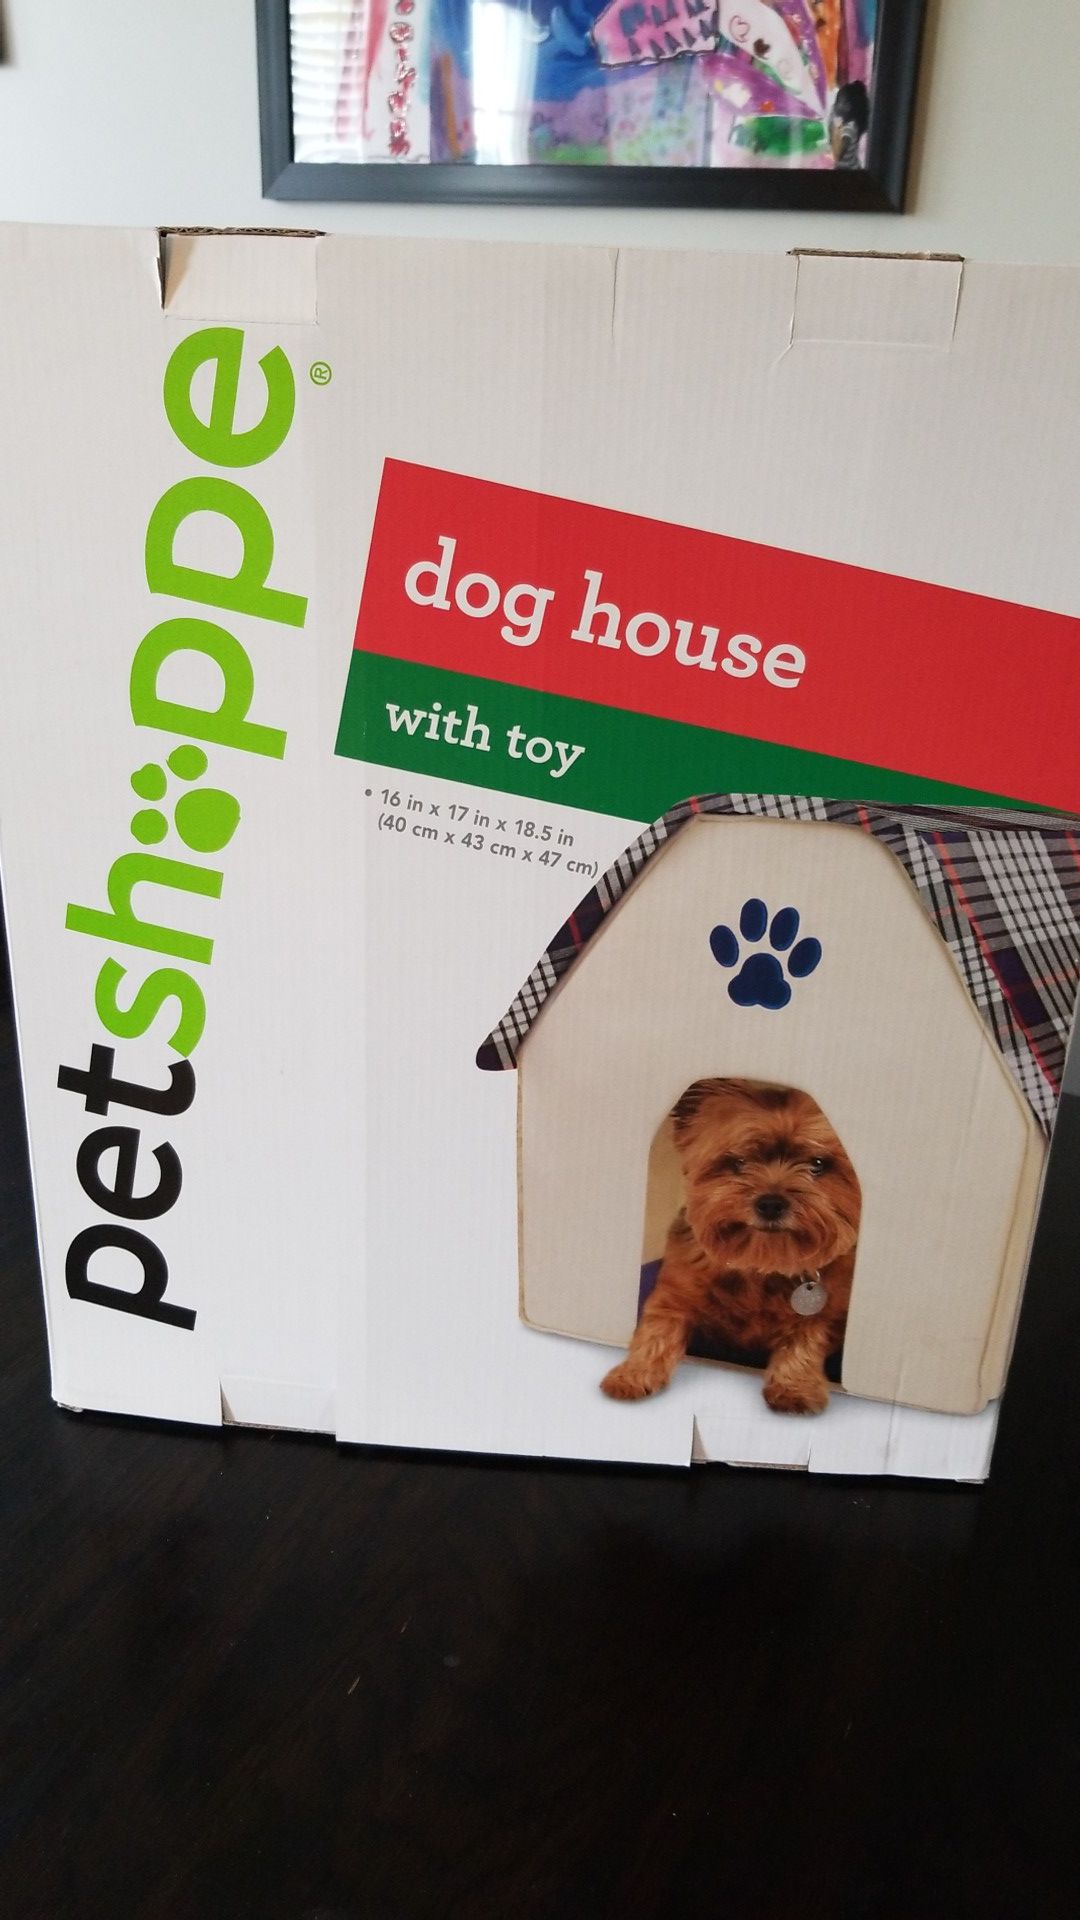 Petshoppe dog house